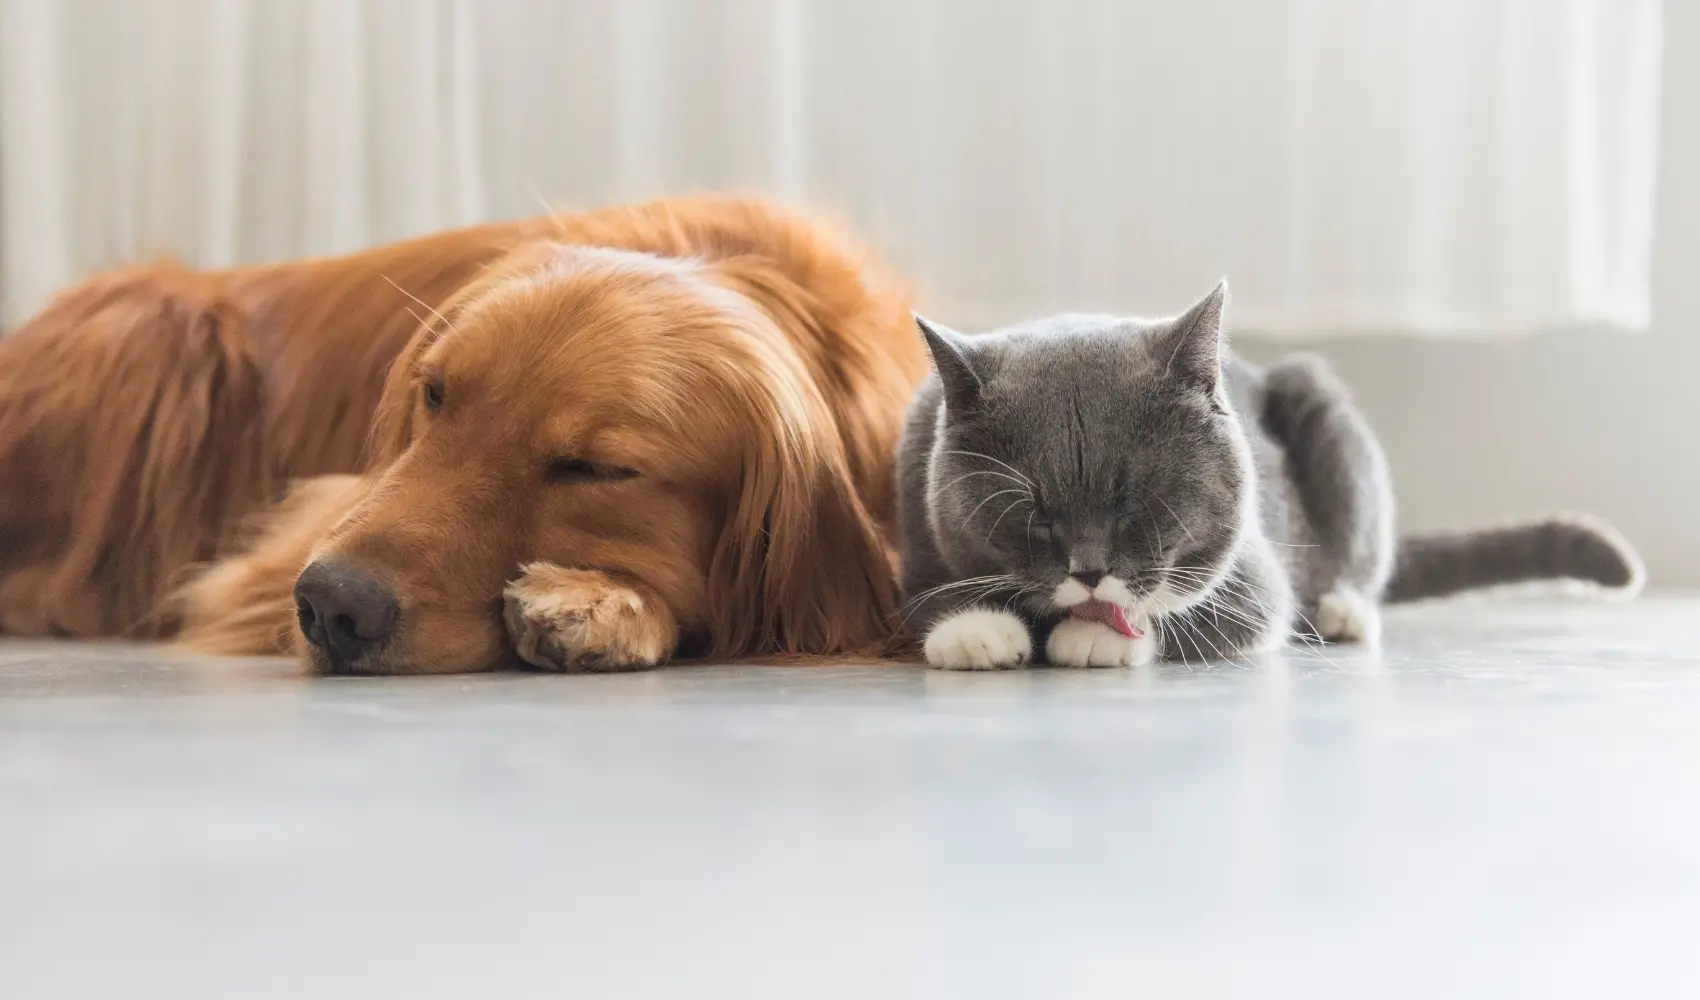 pets sleeping on heated floors